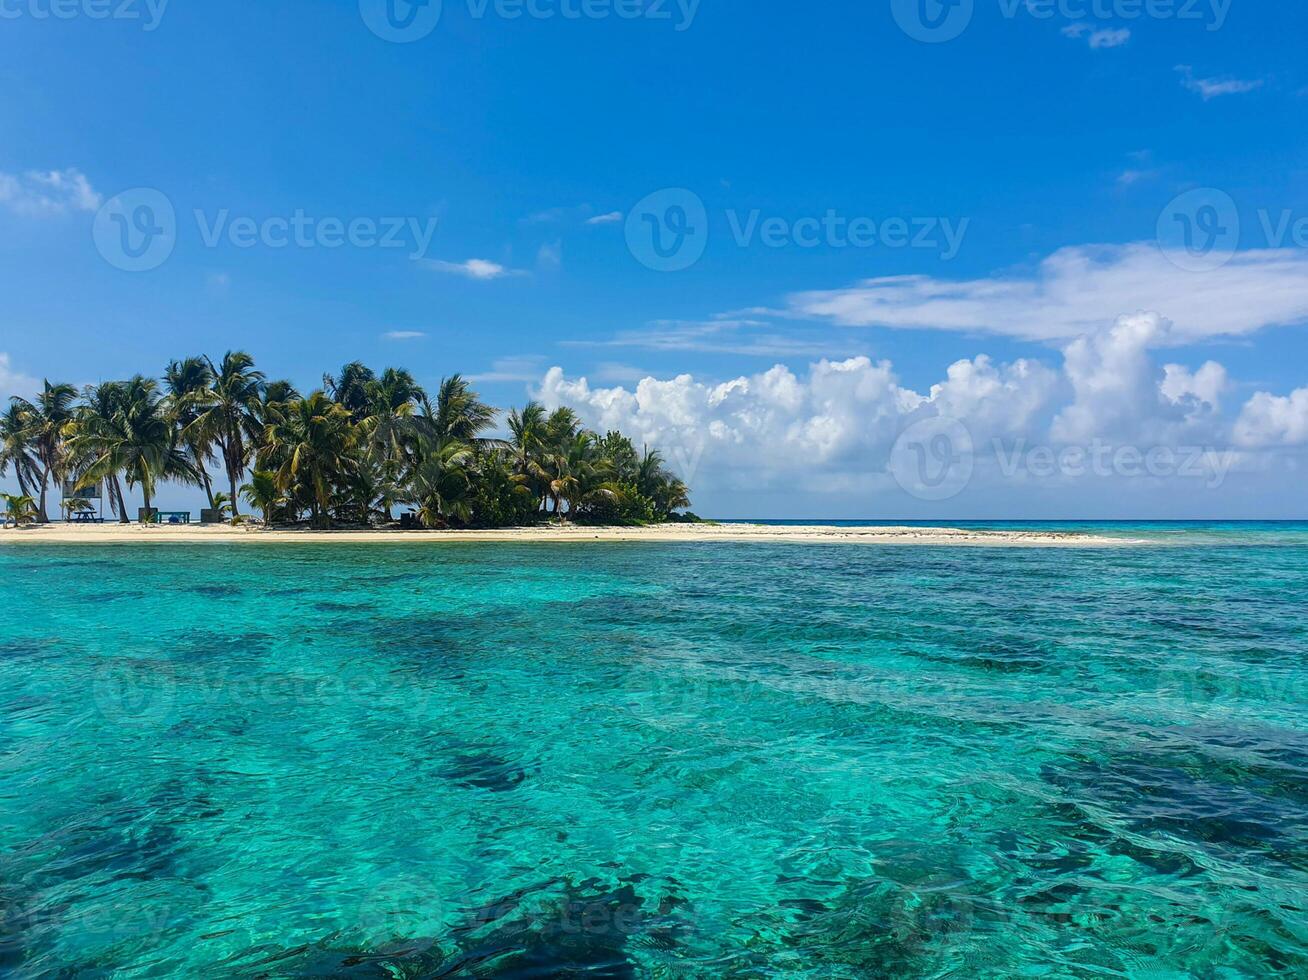 belize ilhotas - pequeno tropical ilha às barreira recife com paraíso de praia - conhecido para mergulhando, snorkeling e relaxante Férias - caribe mar, belize, central América foto